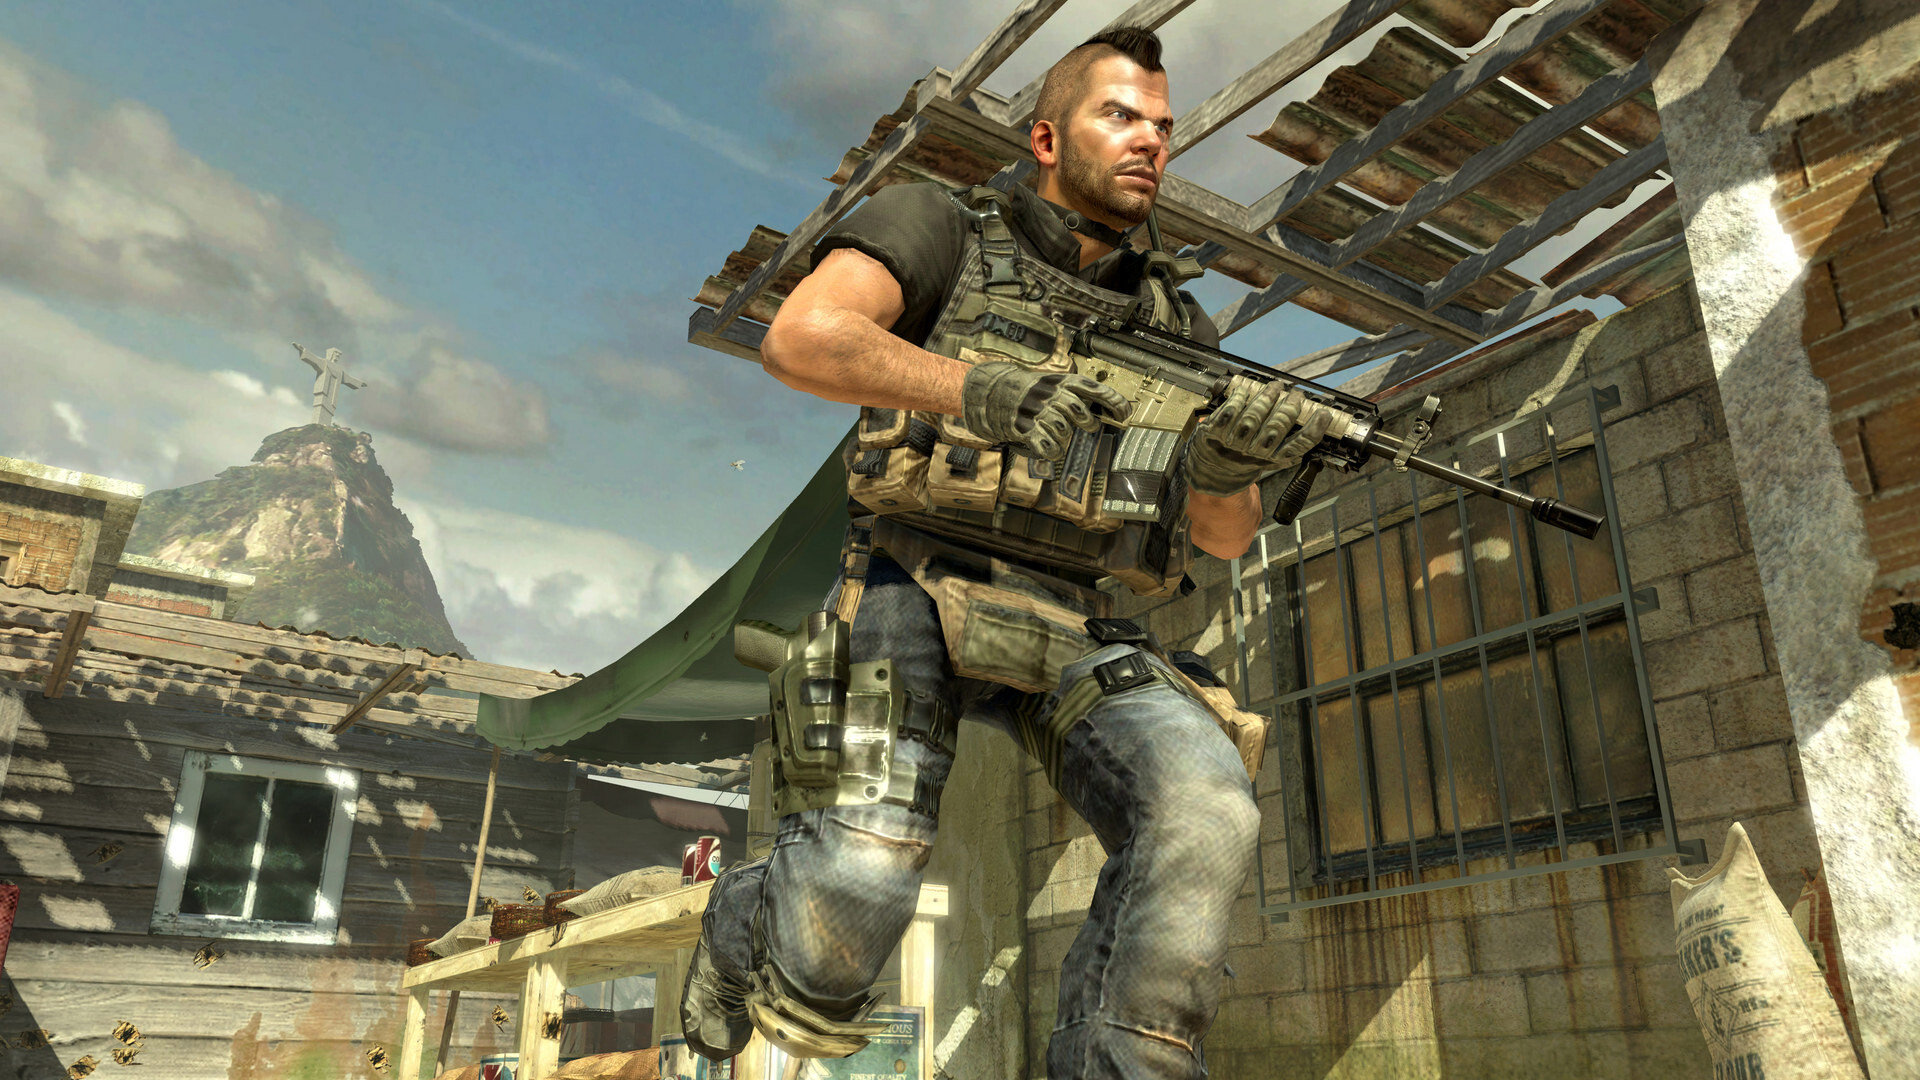 Call of Duty: Modern Warfare III Vault Edition EU Steam Altergift